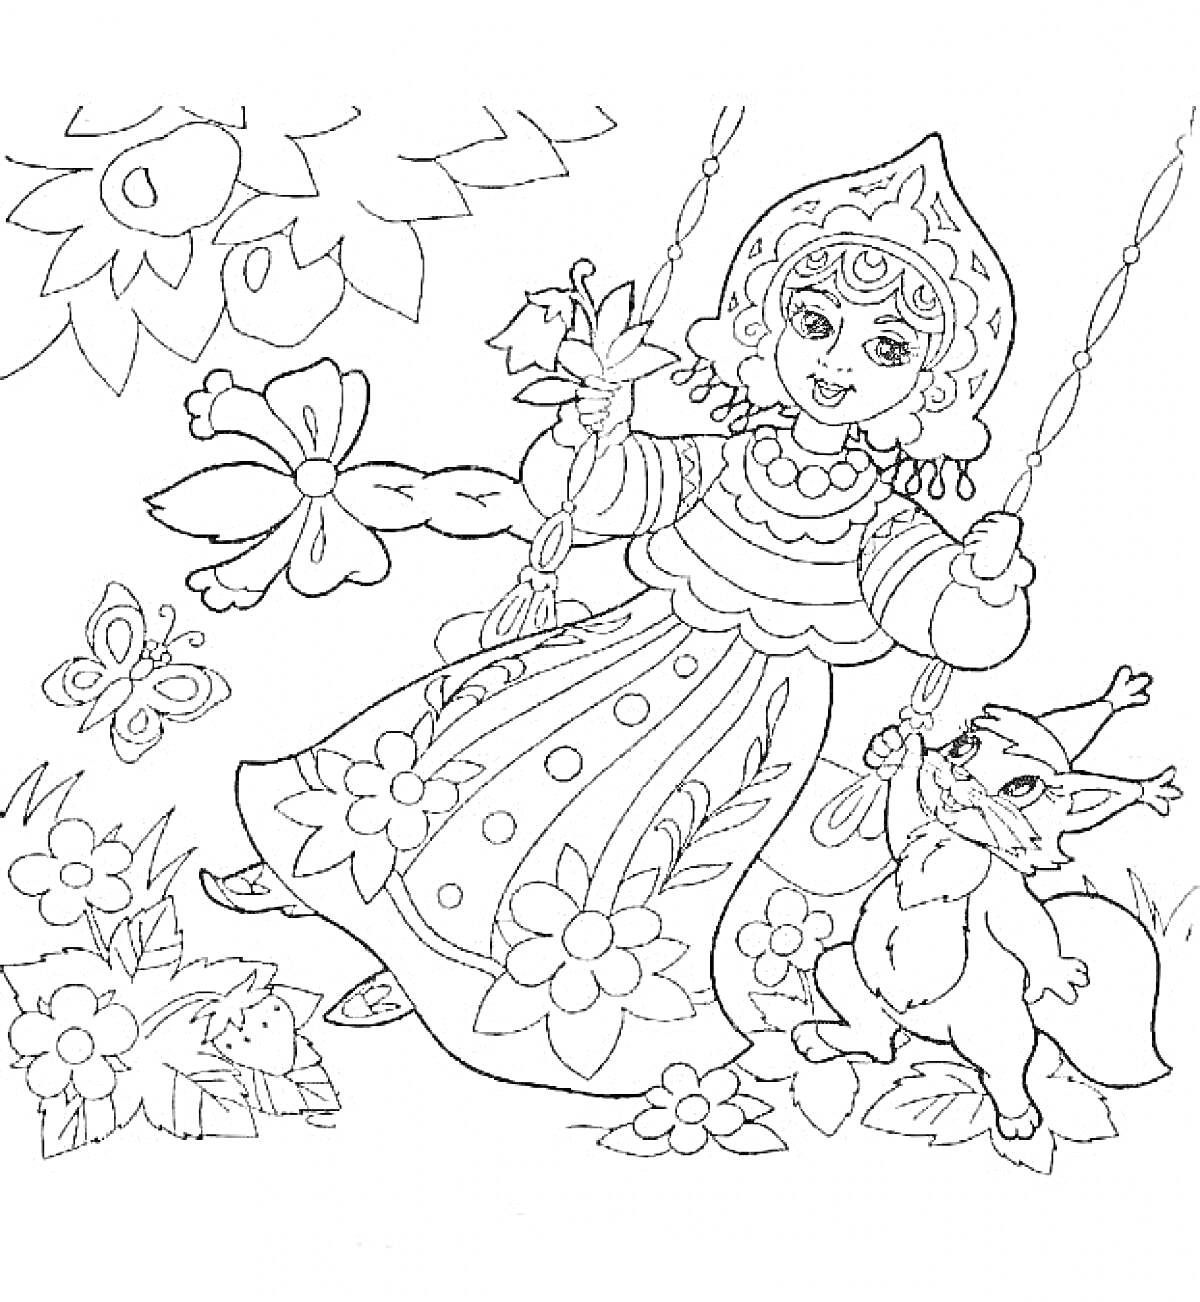 Царевна на качелях с цветами, бабочками и лисенком под деревом